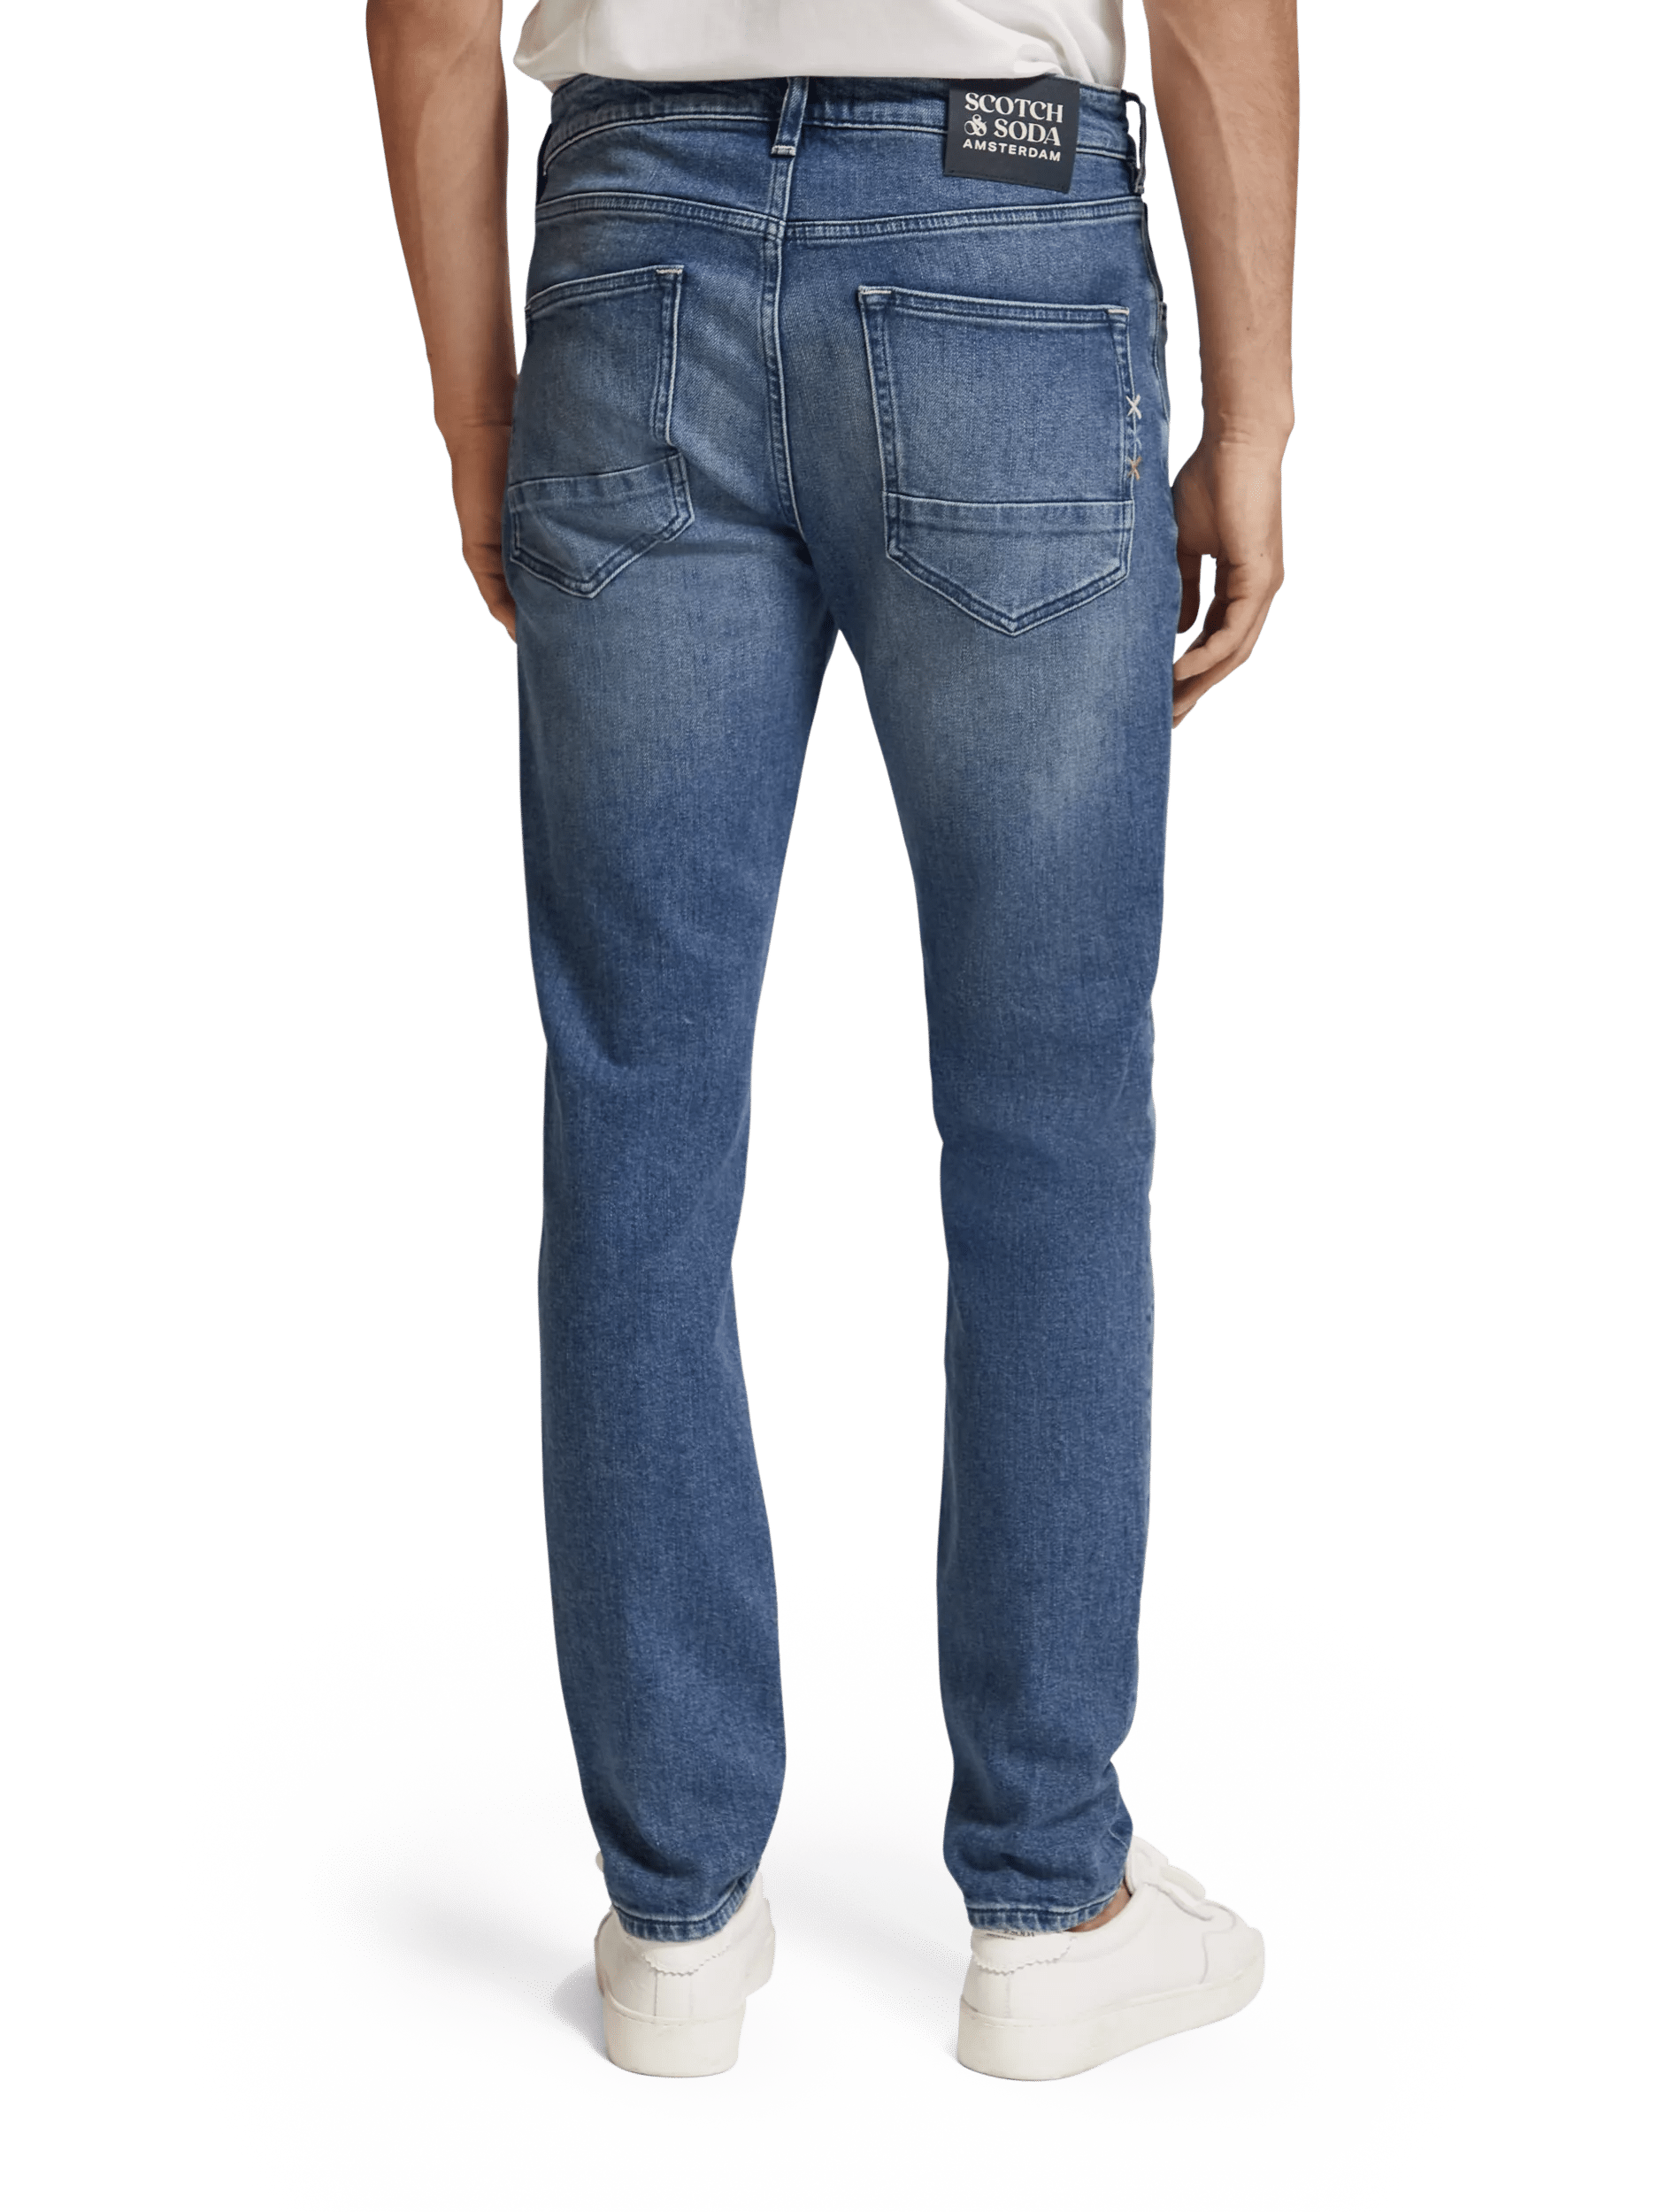 Scotch & Soda The Skim super-slim fit jeans FIT-BCK